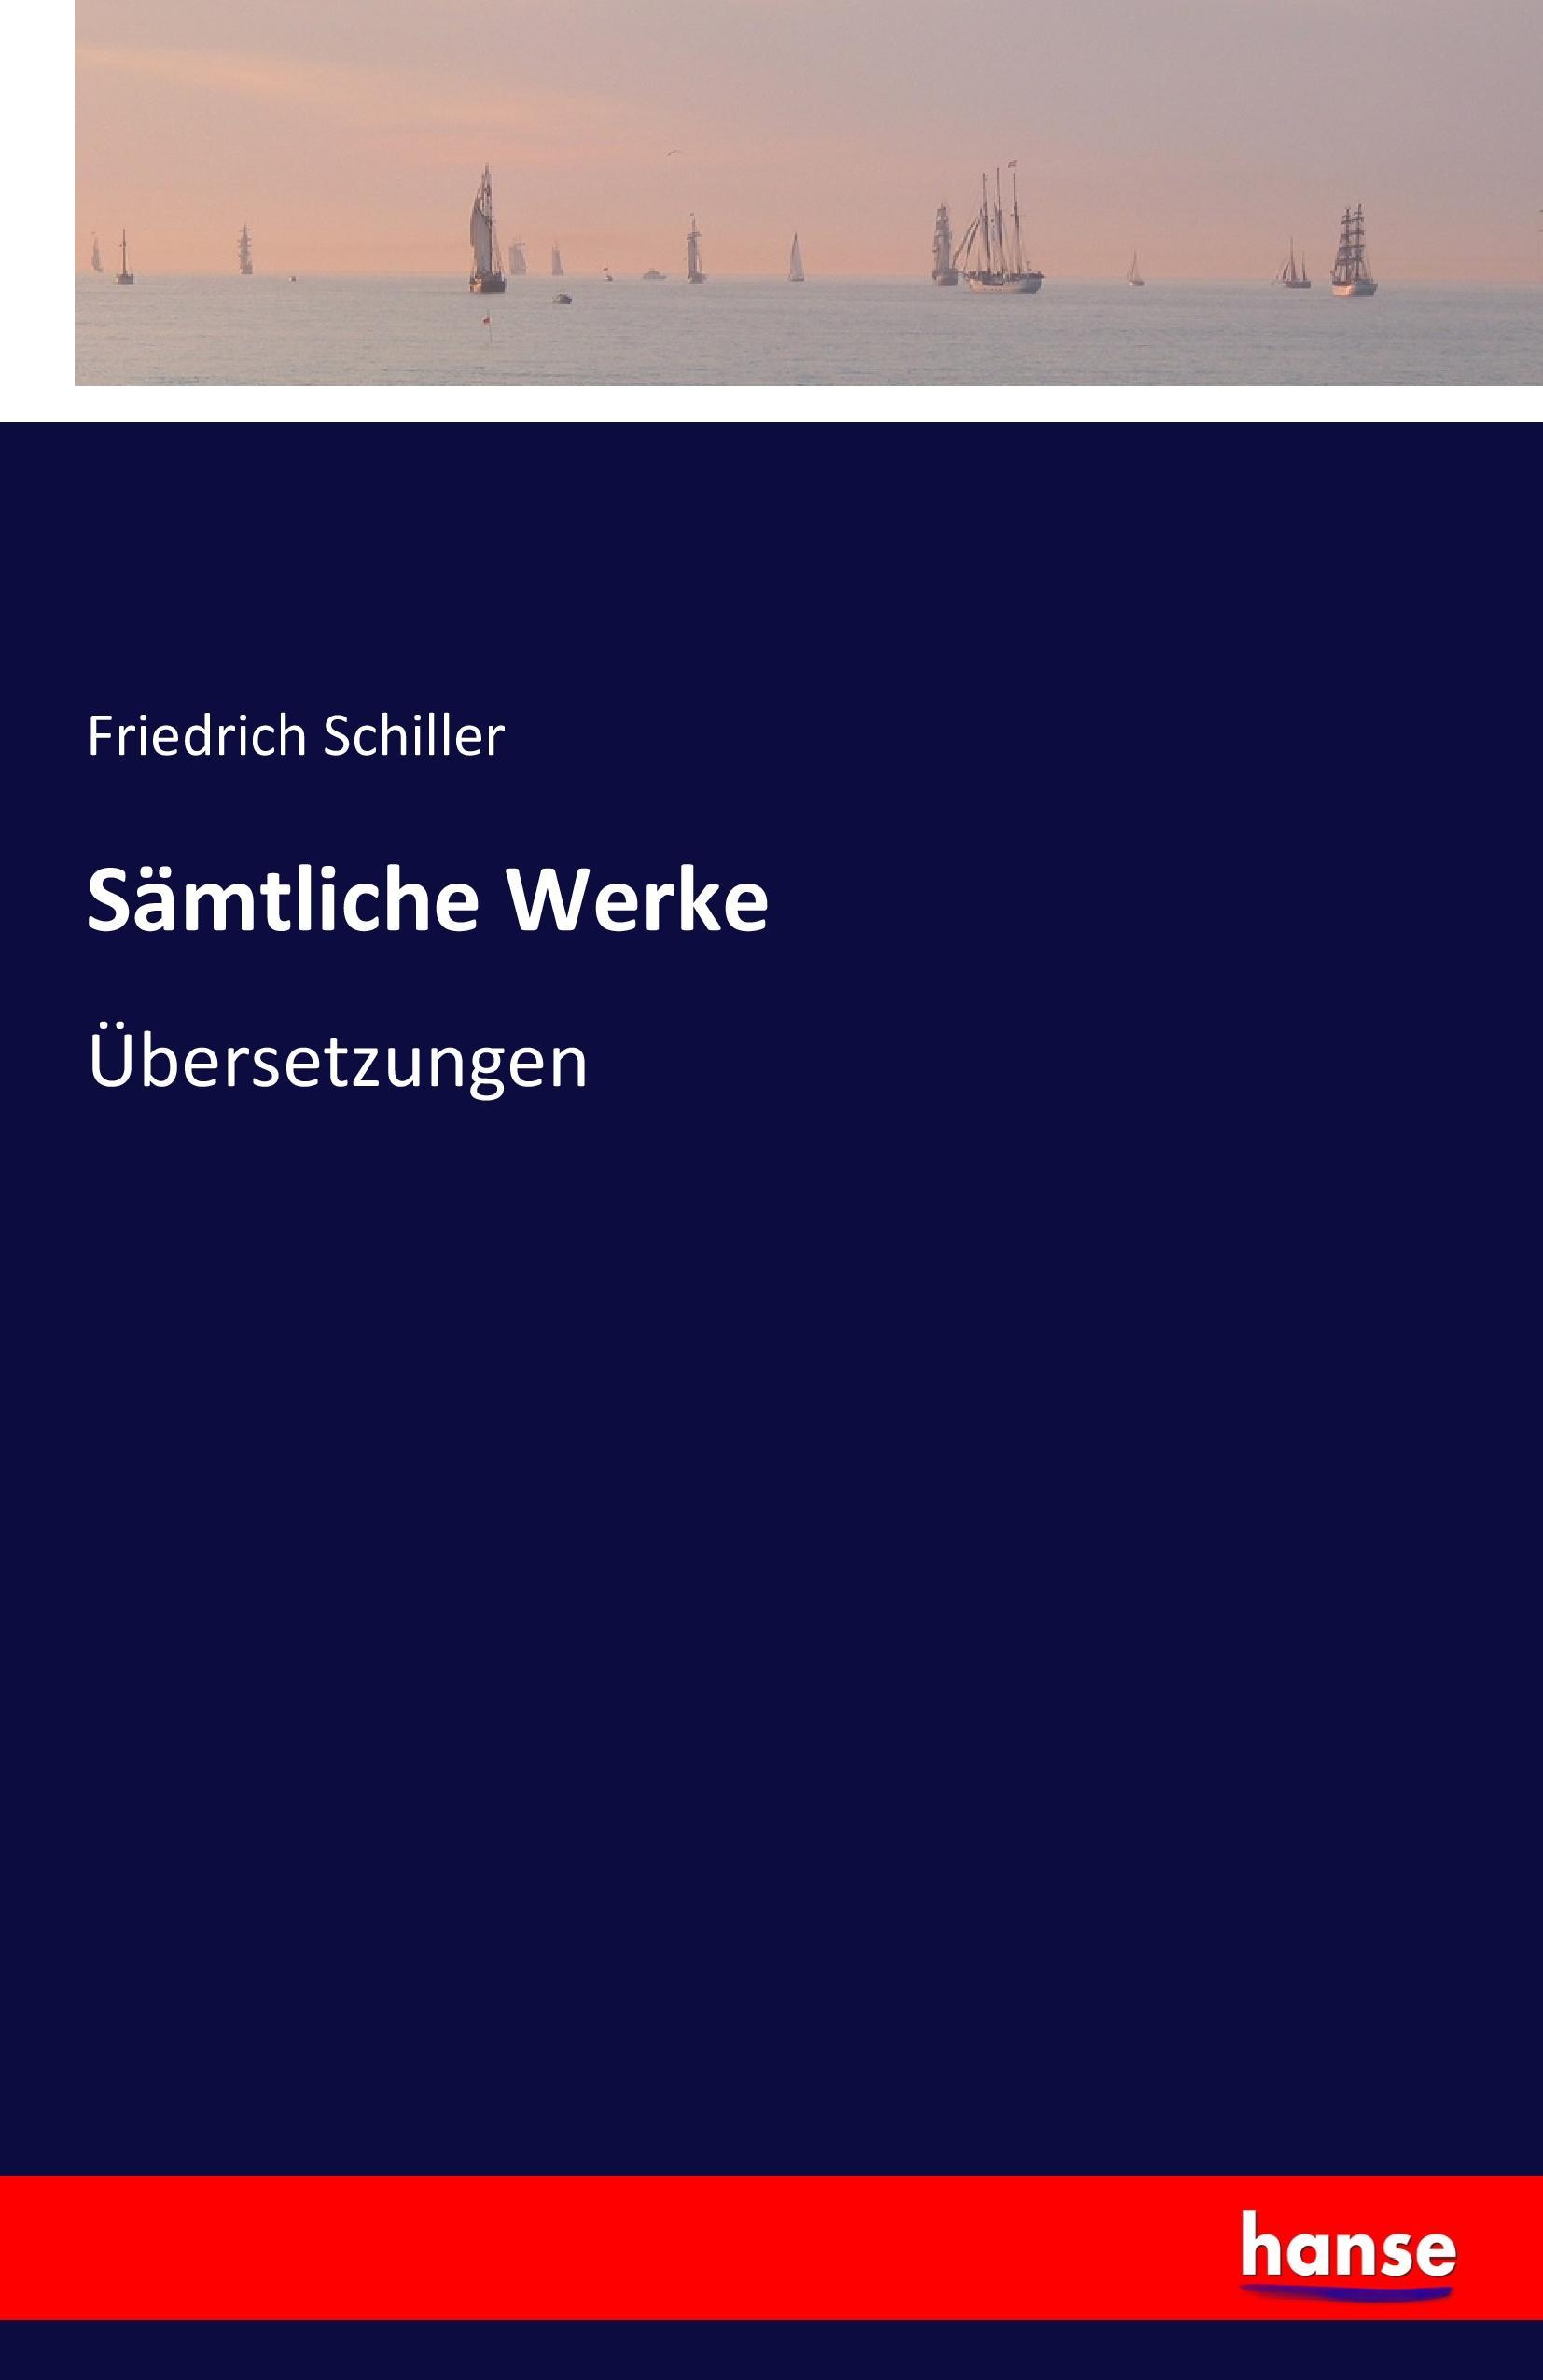 Sämtliche Werke | Übersetzungen | Friedrich Schiller | Taschenbuch | Paperback | 228 S. | Deutsch | 2016 | hansebooks | EAN 9783741133565 - Schiller, Friedrich